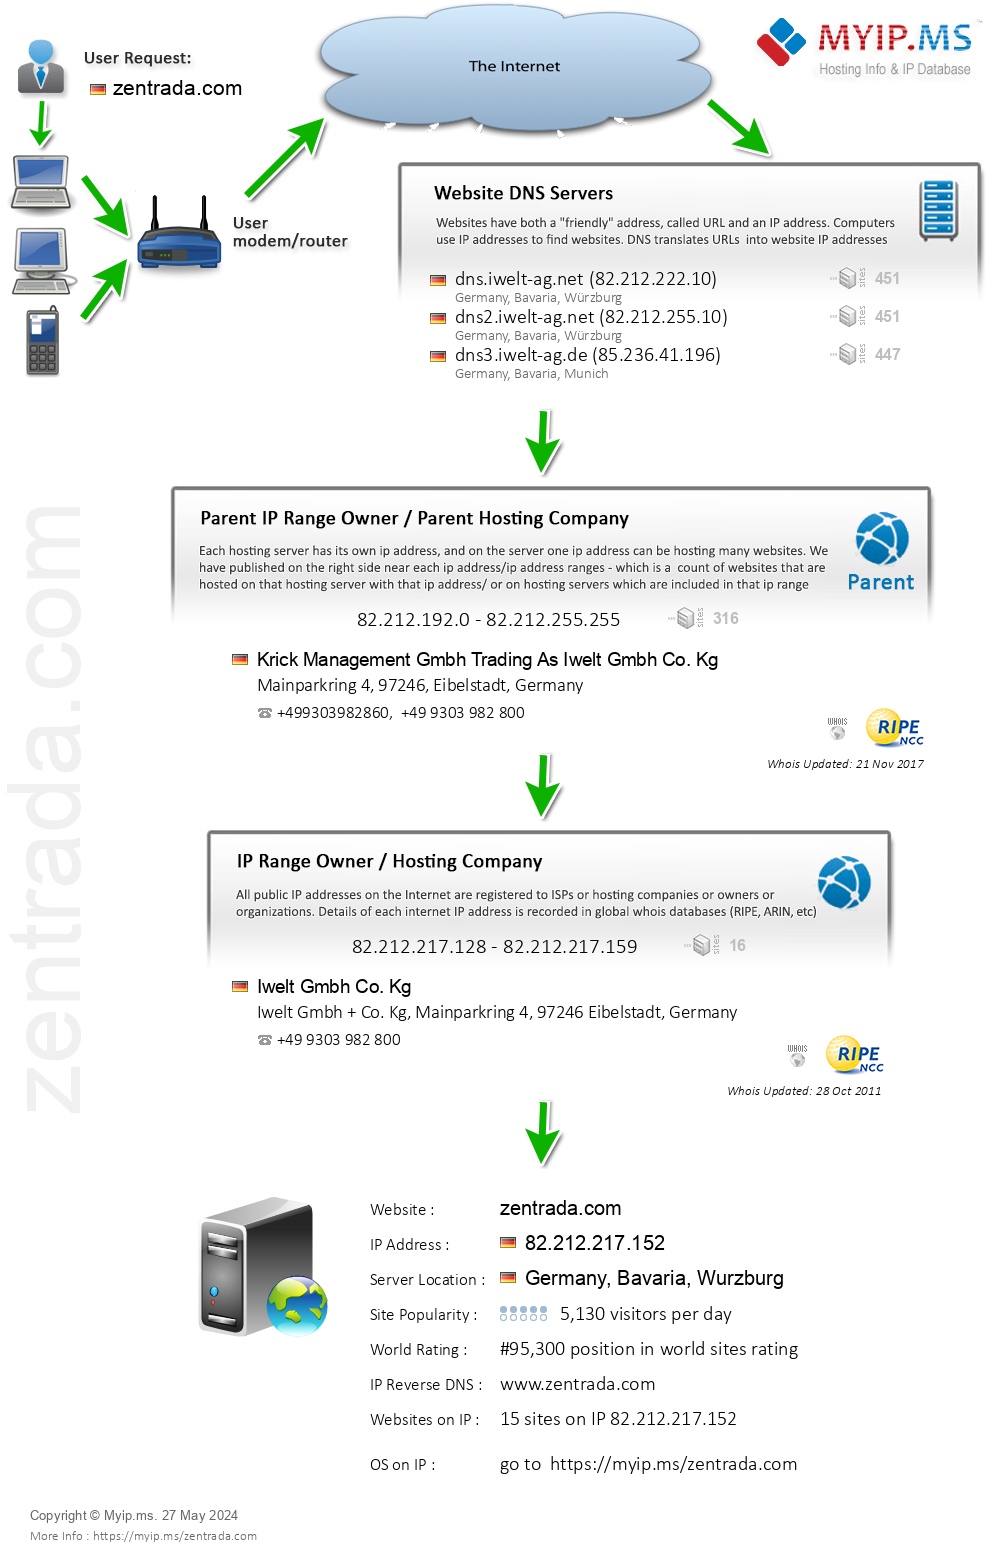 Zentrada.com - Website Hosting Visual IP Diagram